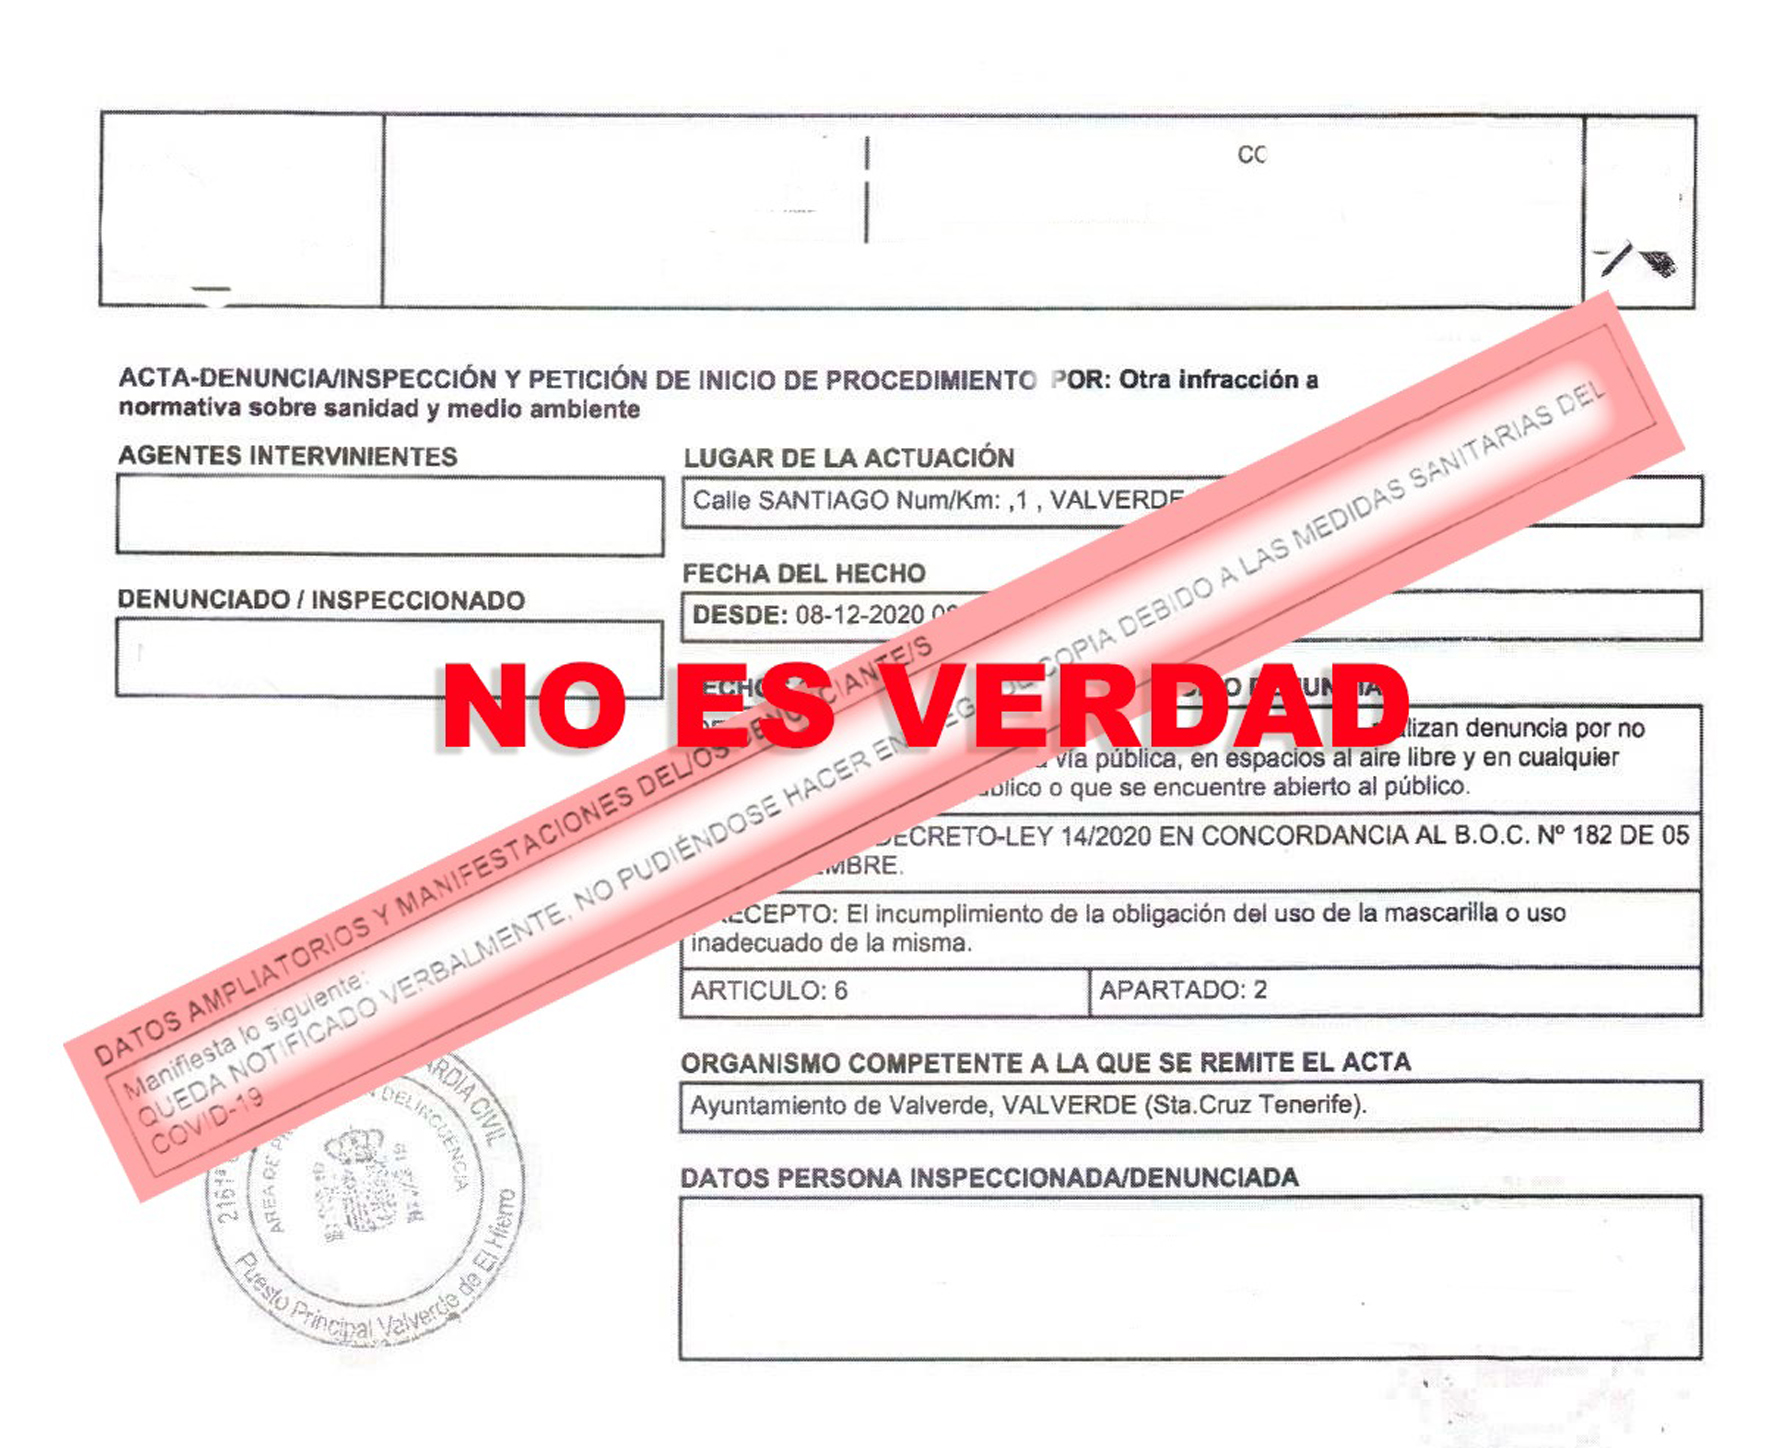 AHI en Valverde pedirá al Ayuntamiento que paralice los expedientes sancionadores instruidos contra los vecinos por el COVID-19